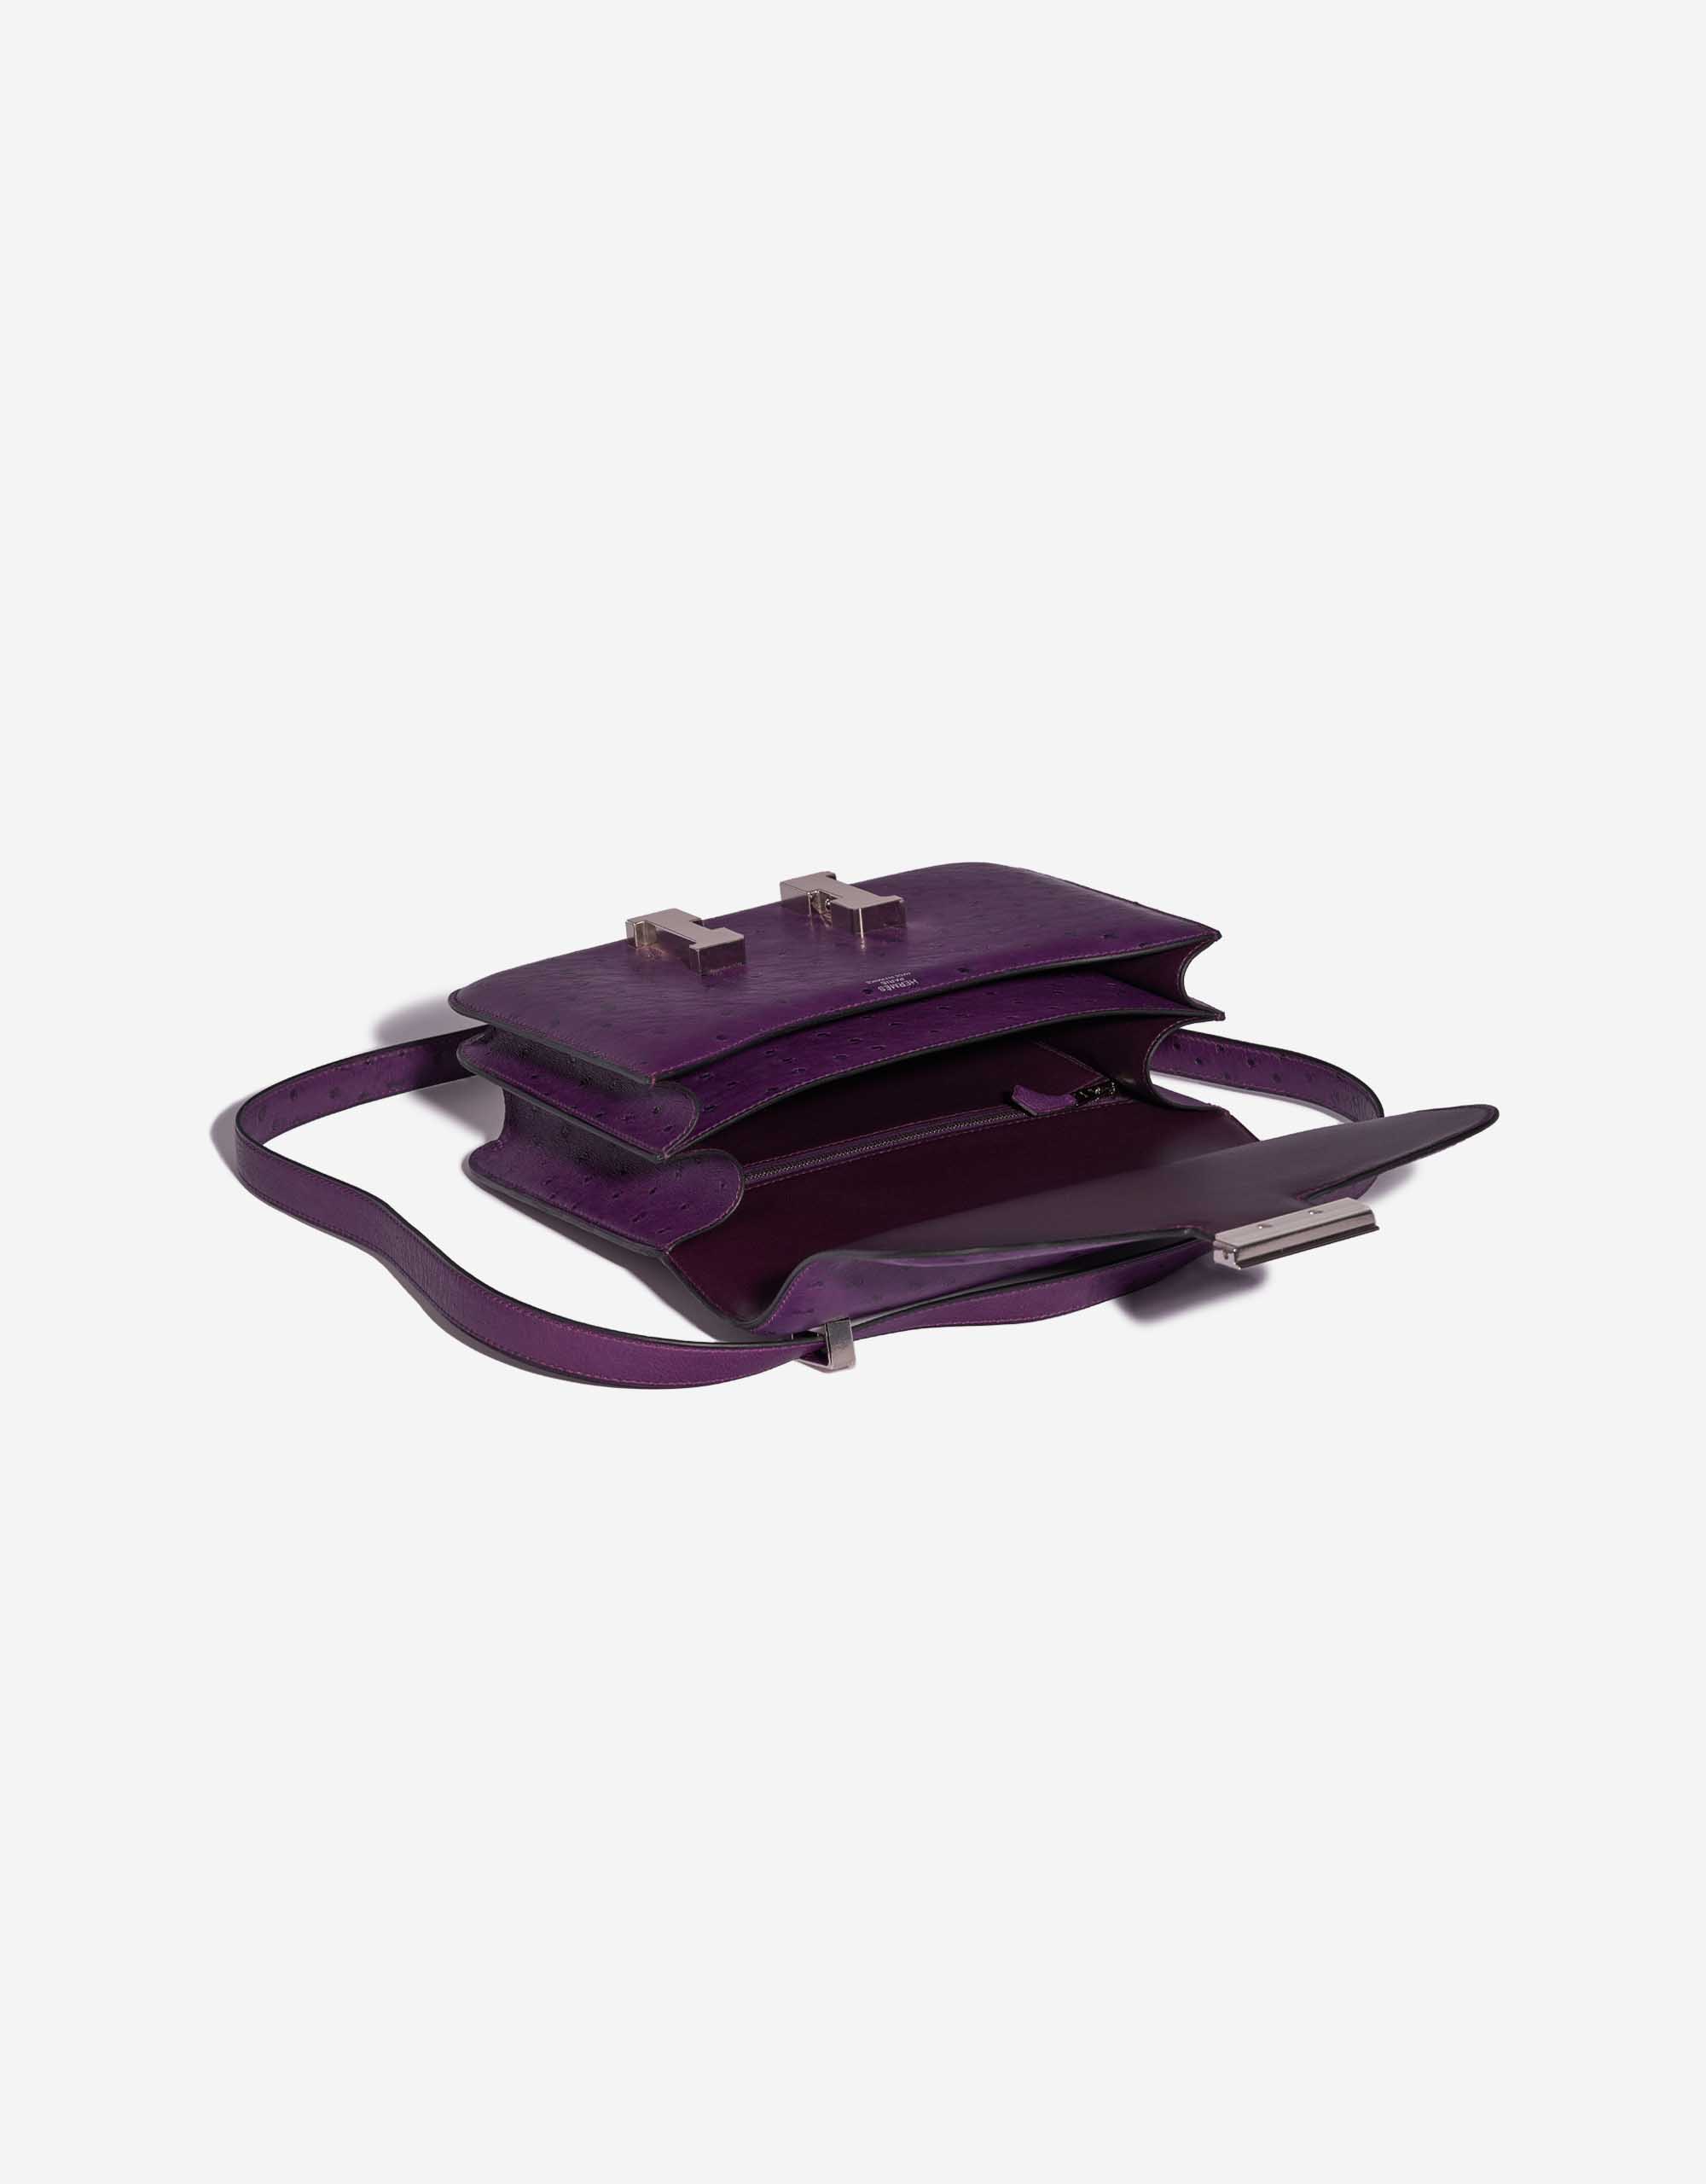 Pre-owned Hermès Tasche Constance 24 Ostrich Violin Violet Inside | Verkaufen Sie Ihre Designer-Tasche auf Saclab.com